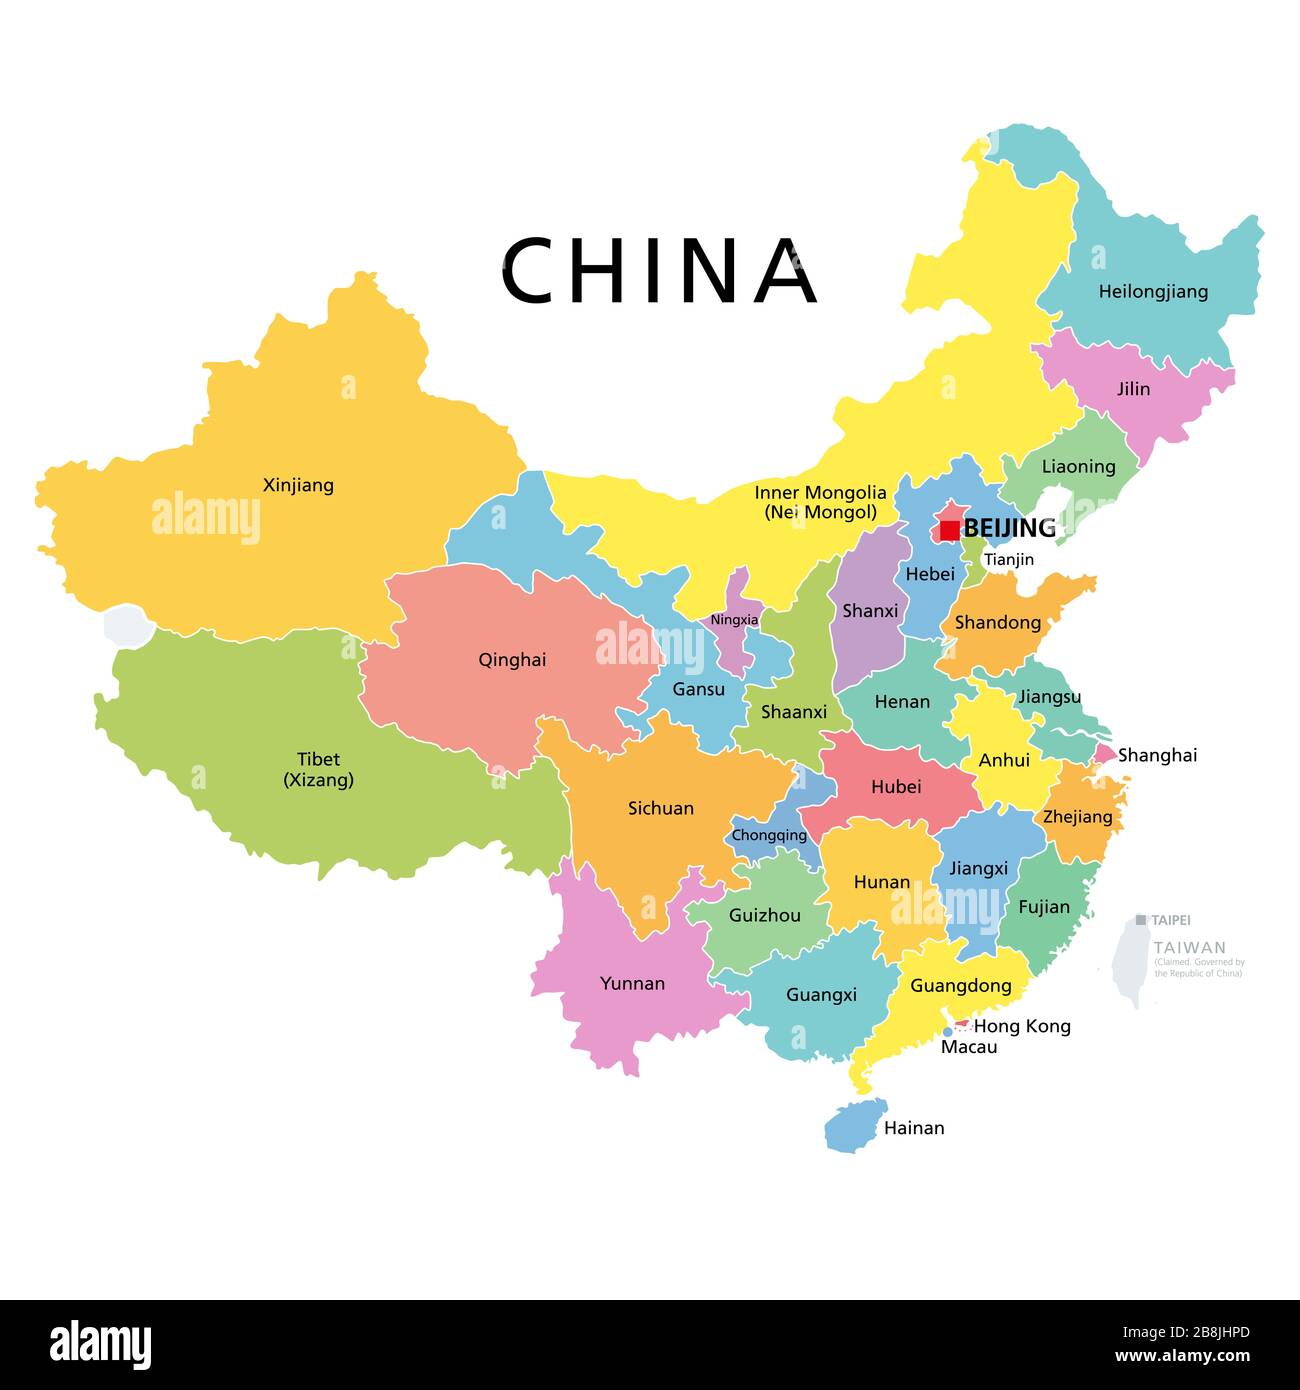 Cina, mappa politica con province multicolore.  Repubblica popolare cinese con capitale Pechino, frontiere e divisioni amministrative.  Inglese Foto stock - Alamy